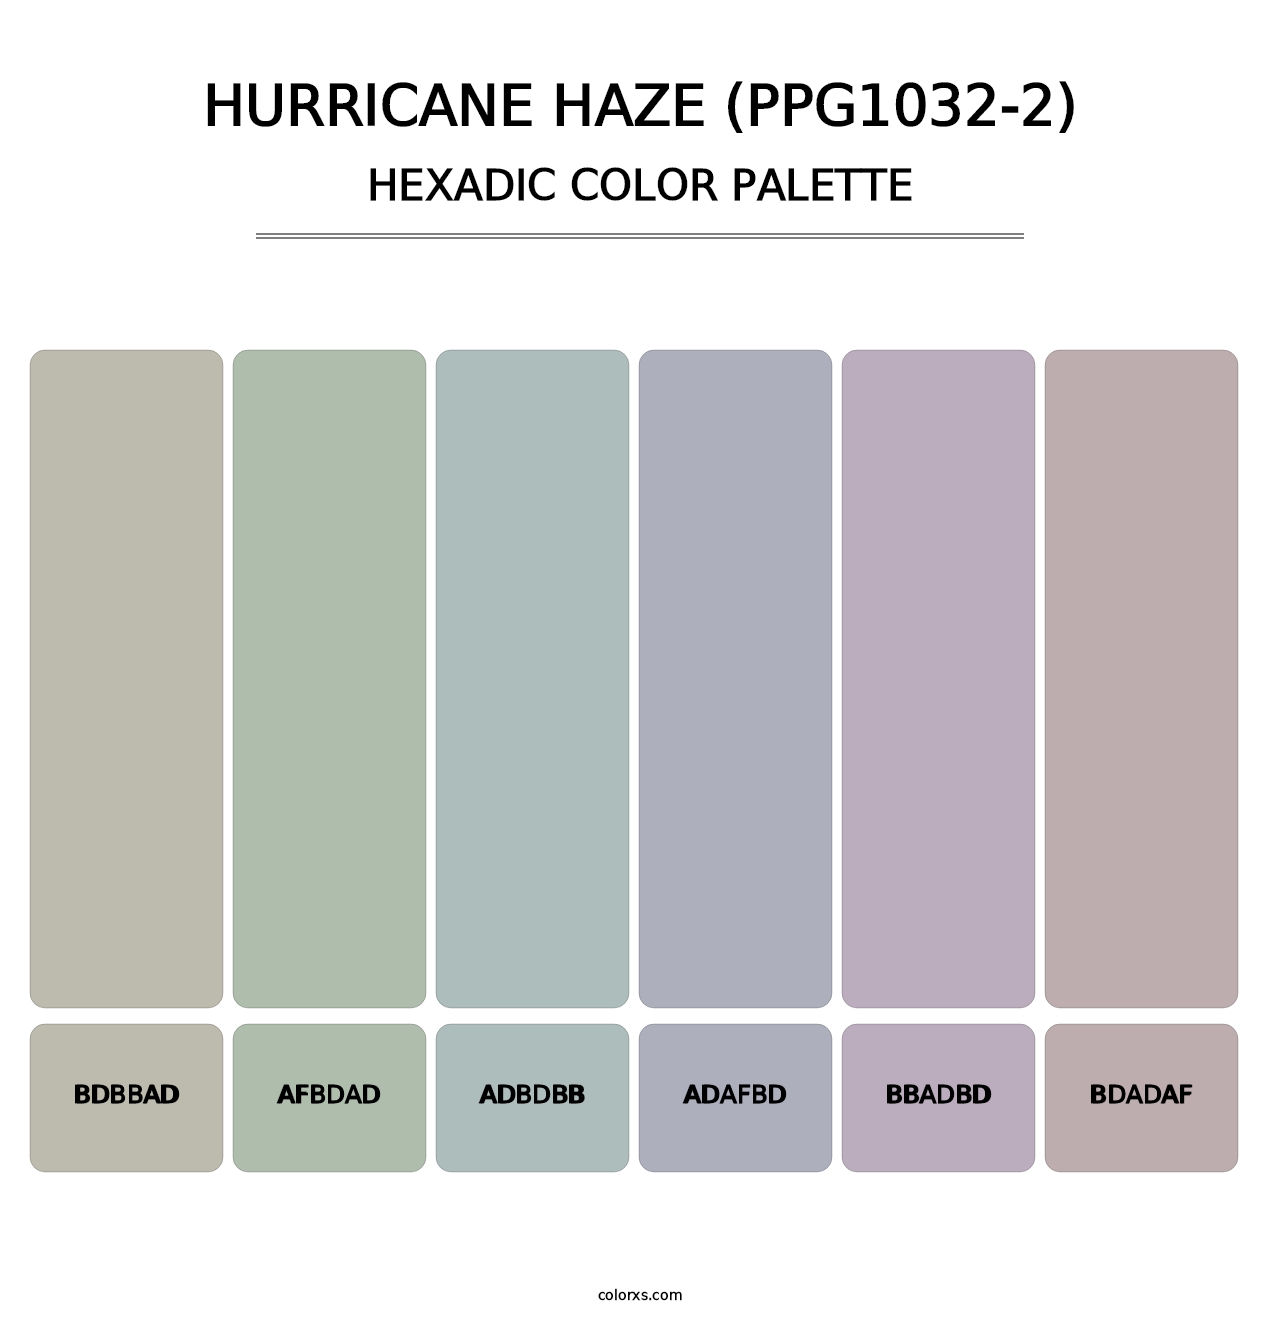 Hurricane Haze (PPG1032-2) - Hexadic Color Palette